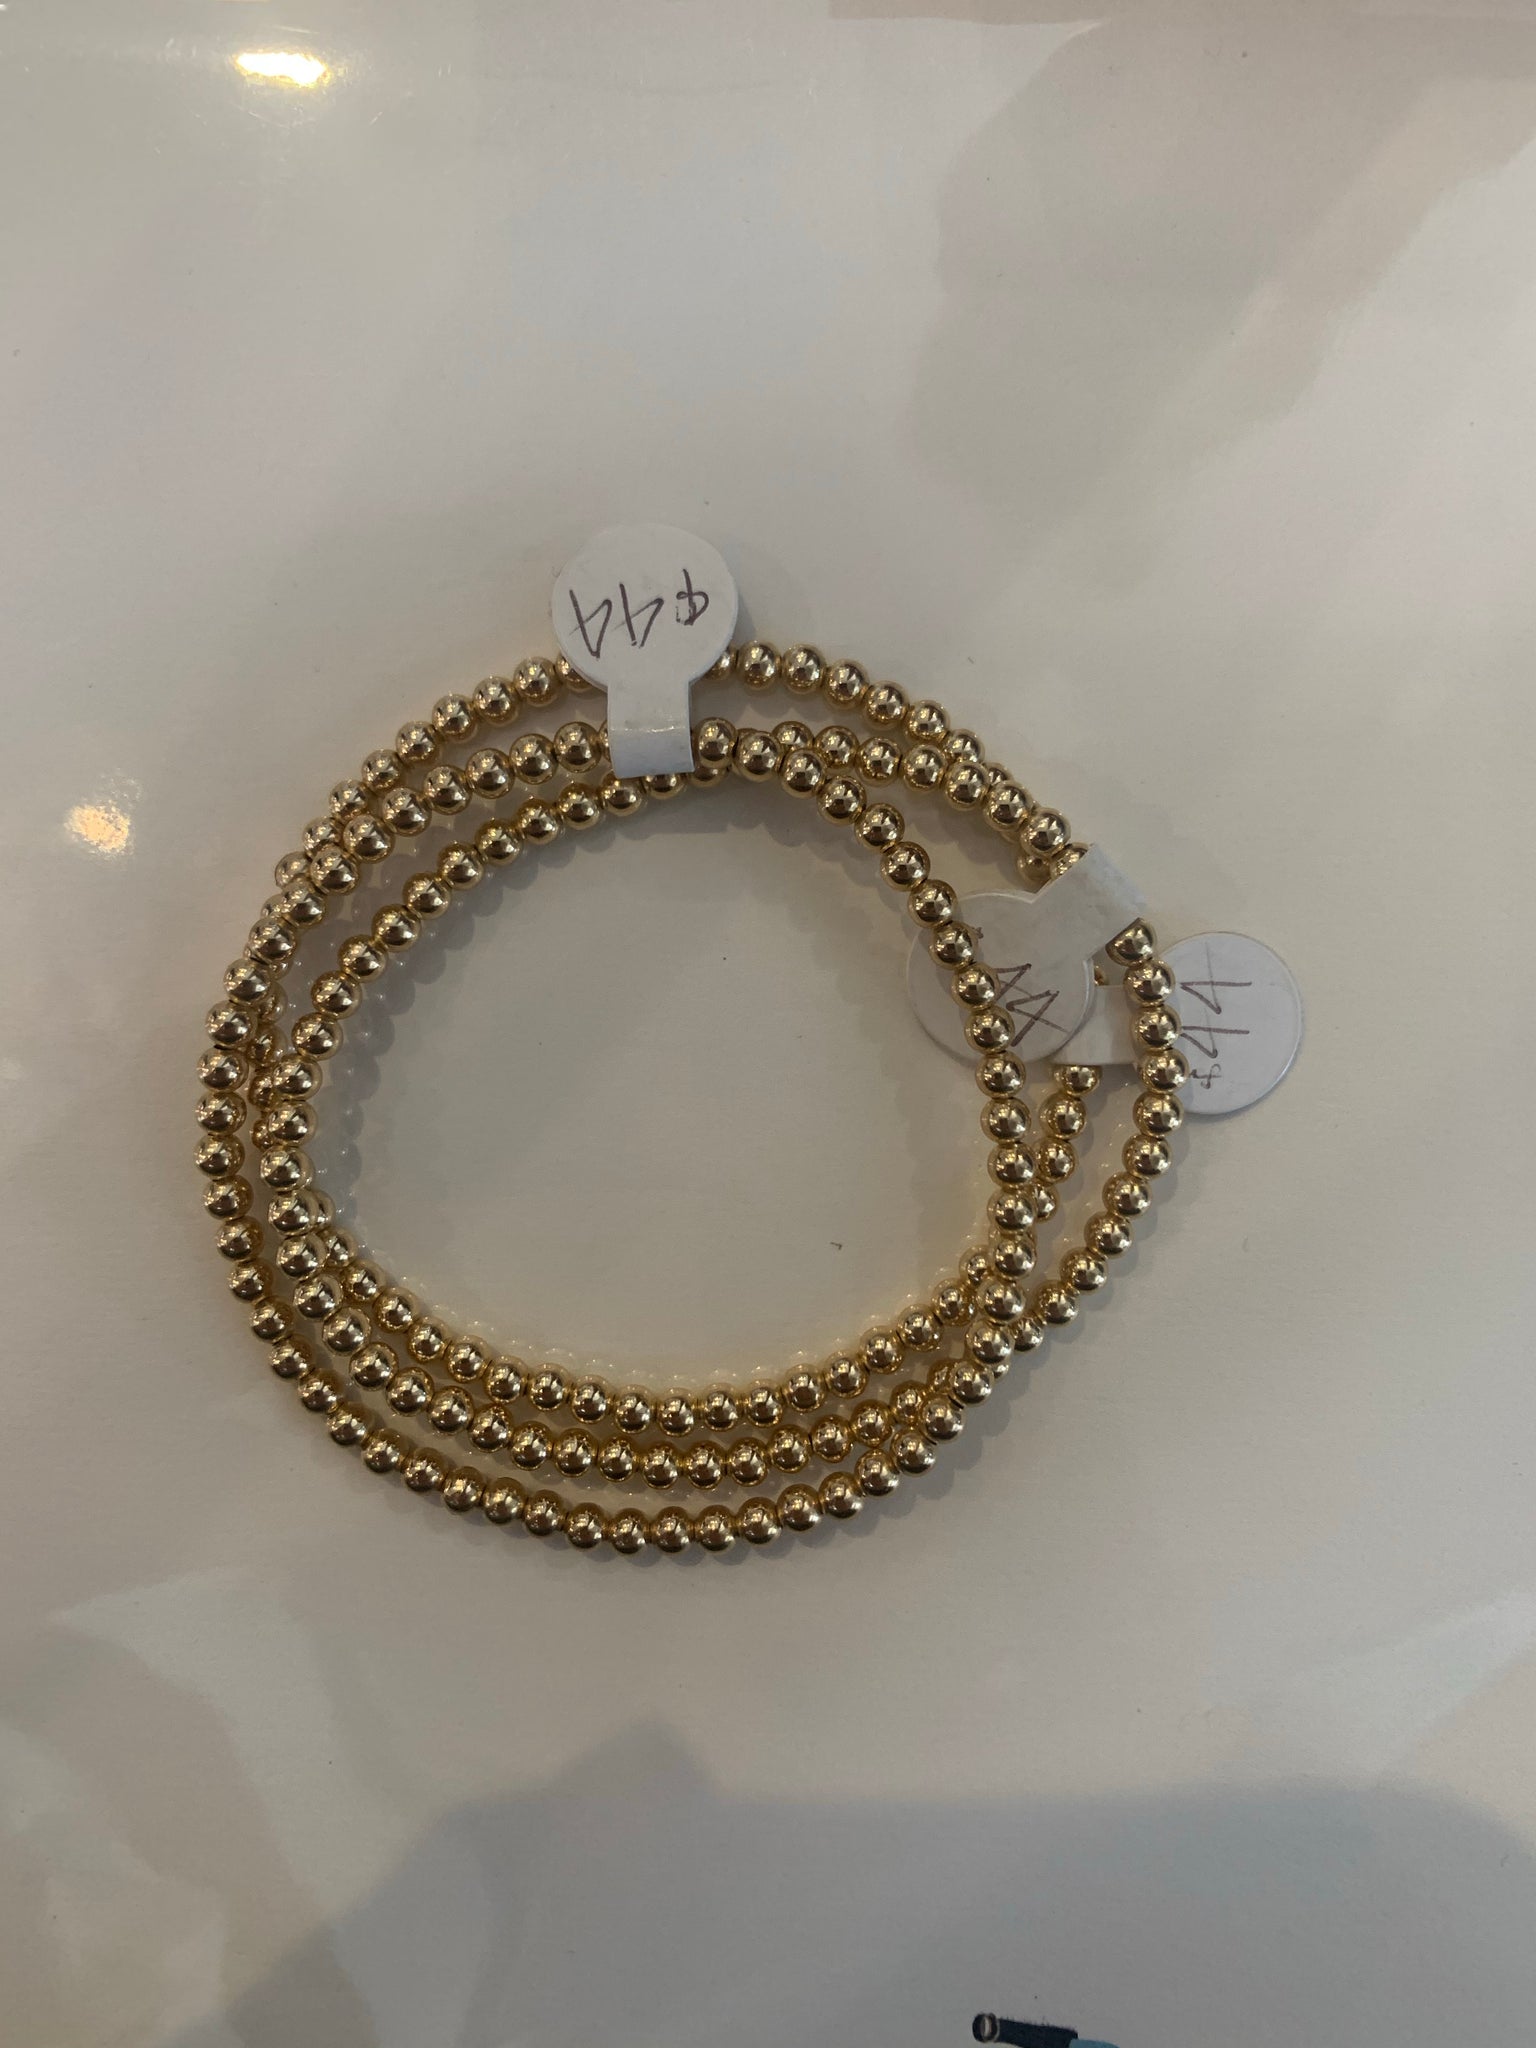 Karen Lazar Design Bracelets size 6